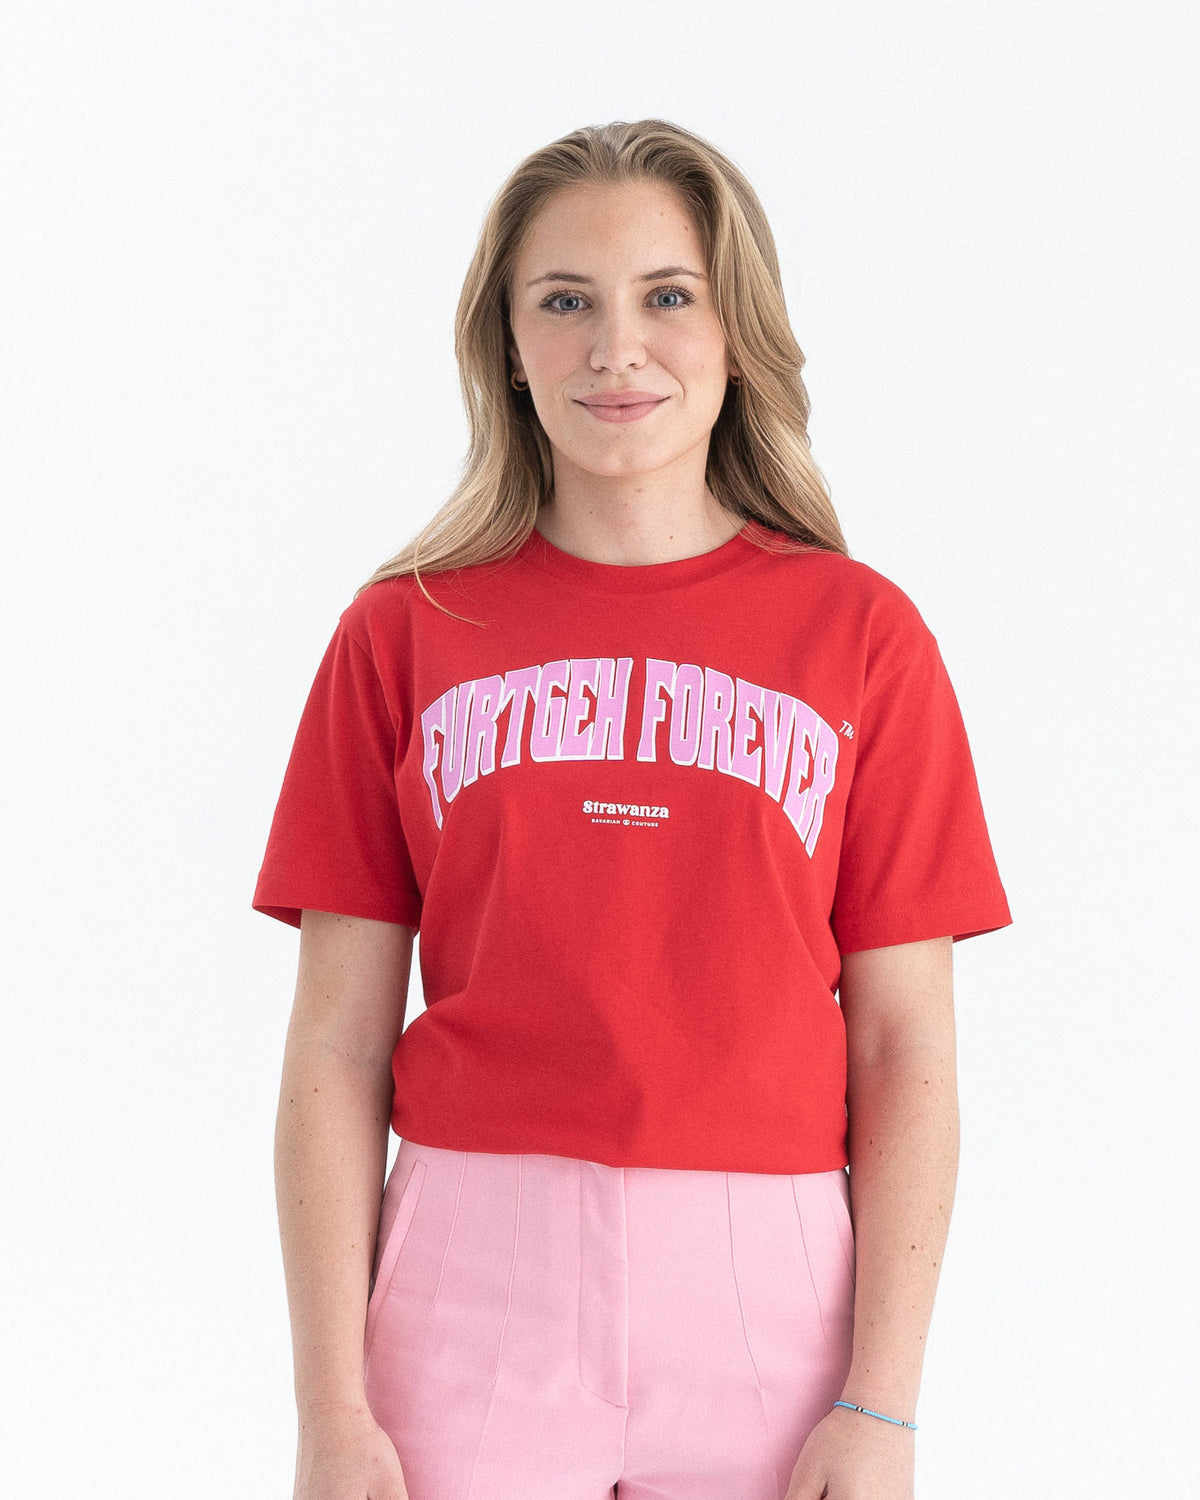 Weibliches Model trägt ein rotes T-Shirt mit einem großen, rosanen "FURTGEH FOREVER" Schriftzug vorne auf der Brust.